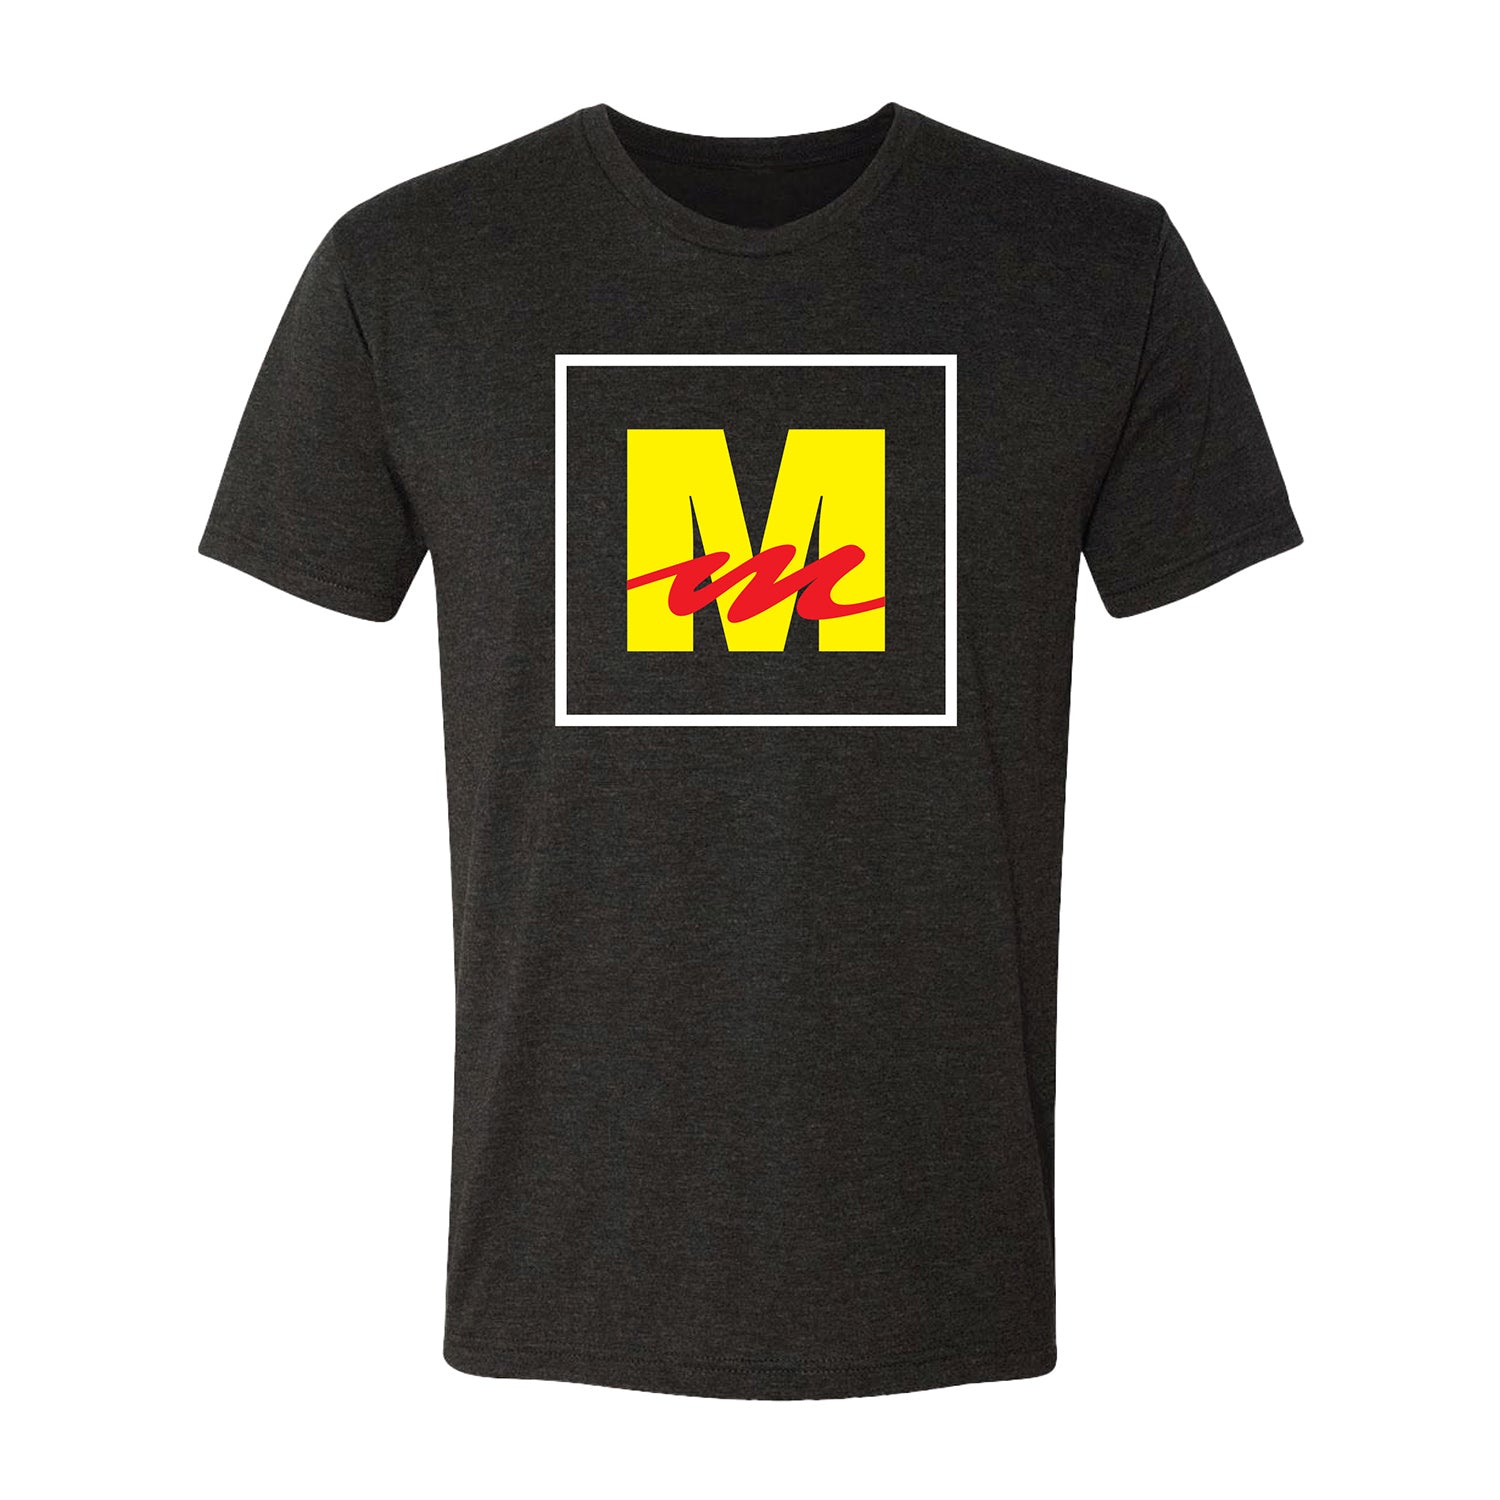 Mecum Auctions Black M Block Logo T-Shirt - Front View